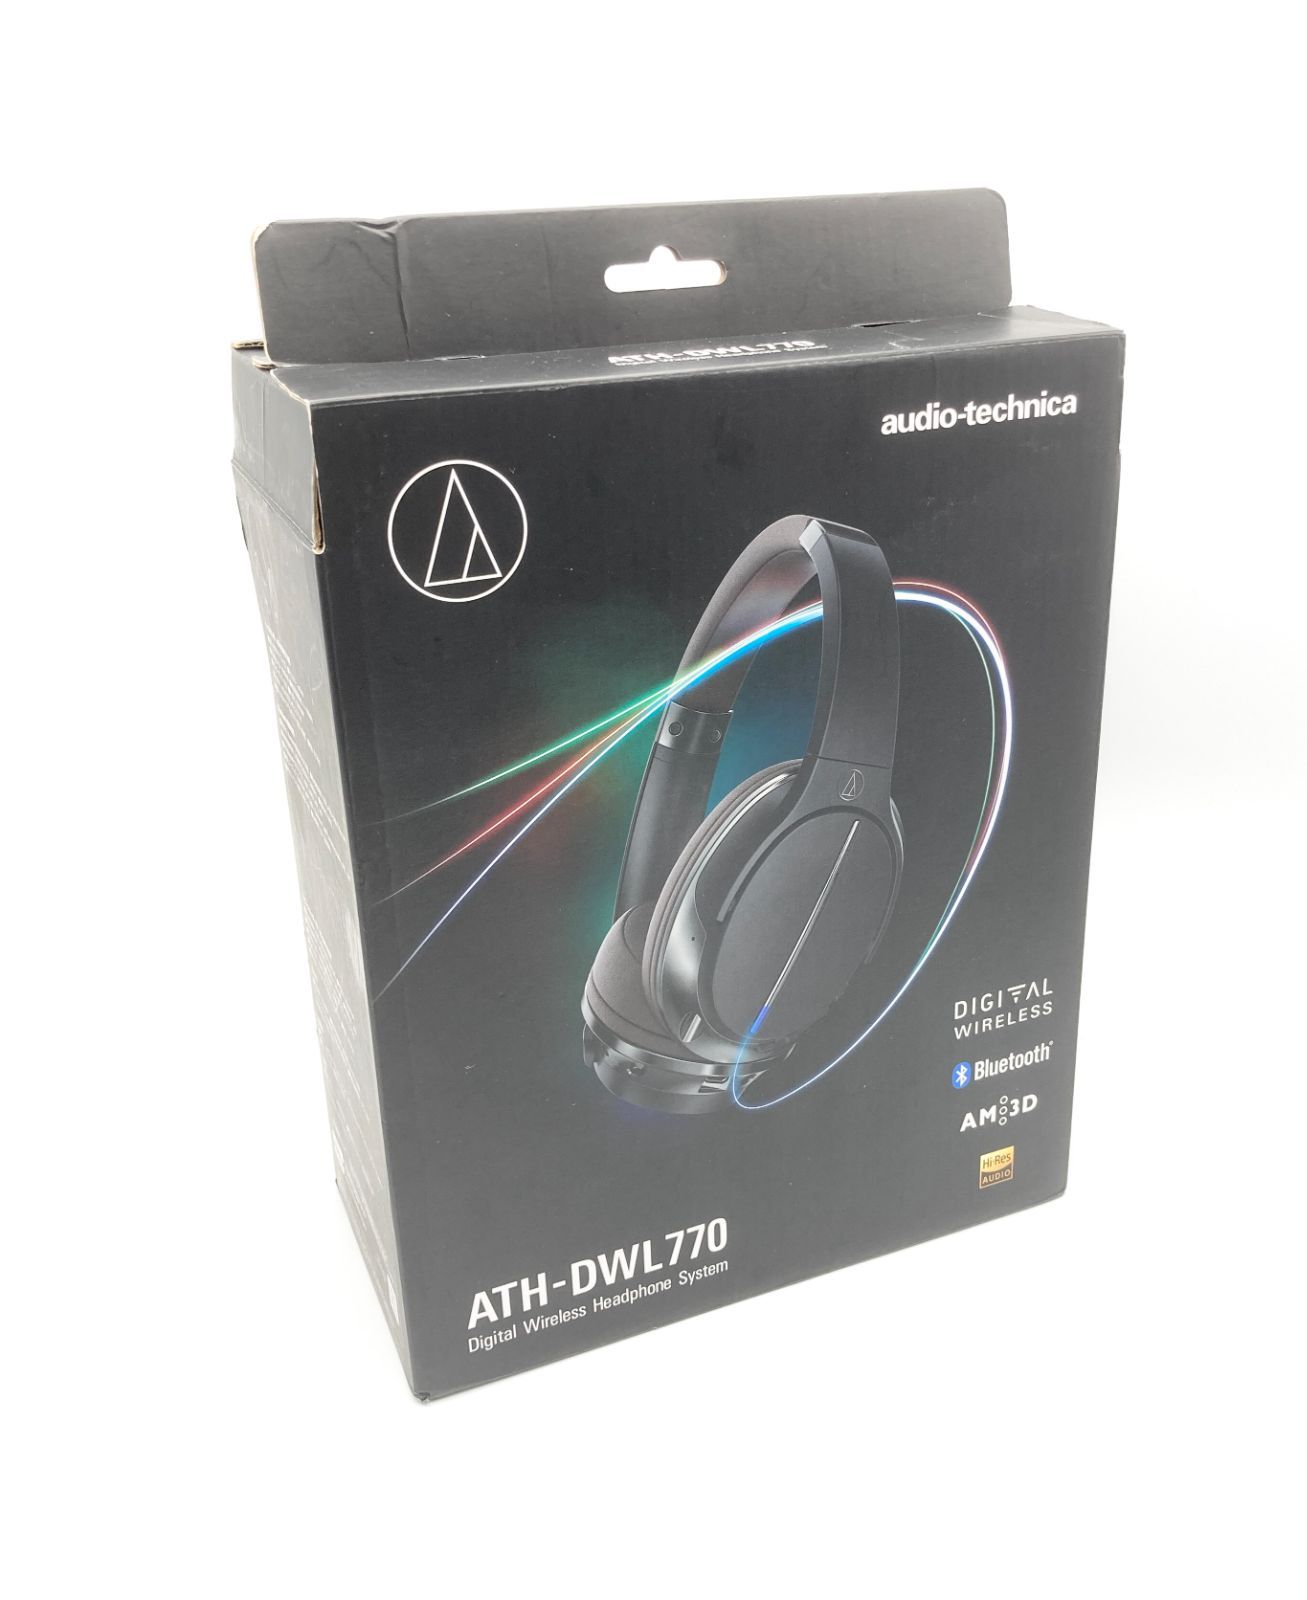 クーポン利用 audio-technica デジタルワイヤレスヘッドホンシステム Bluetooth ハイレゾ音源対応 ATH-DWL770 ブラック 